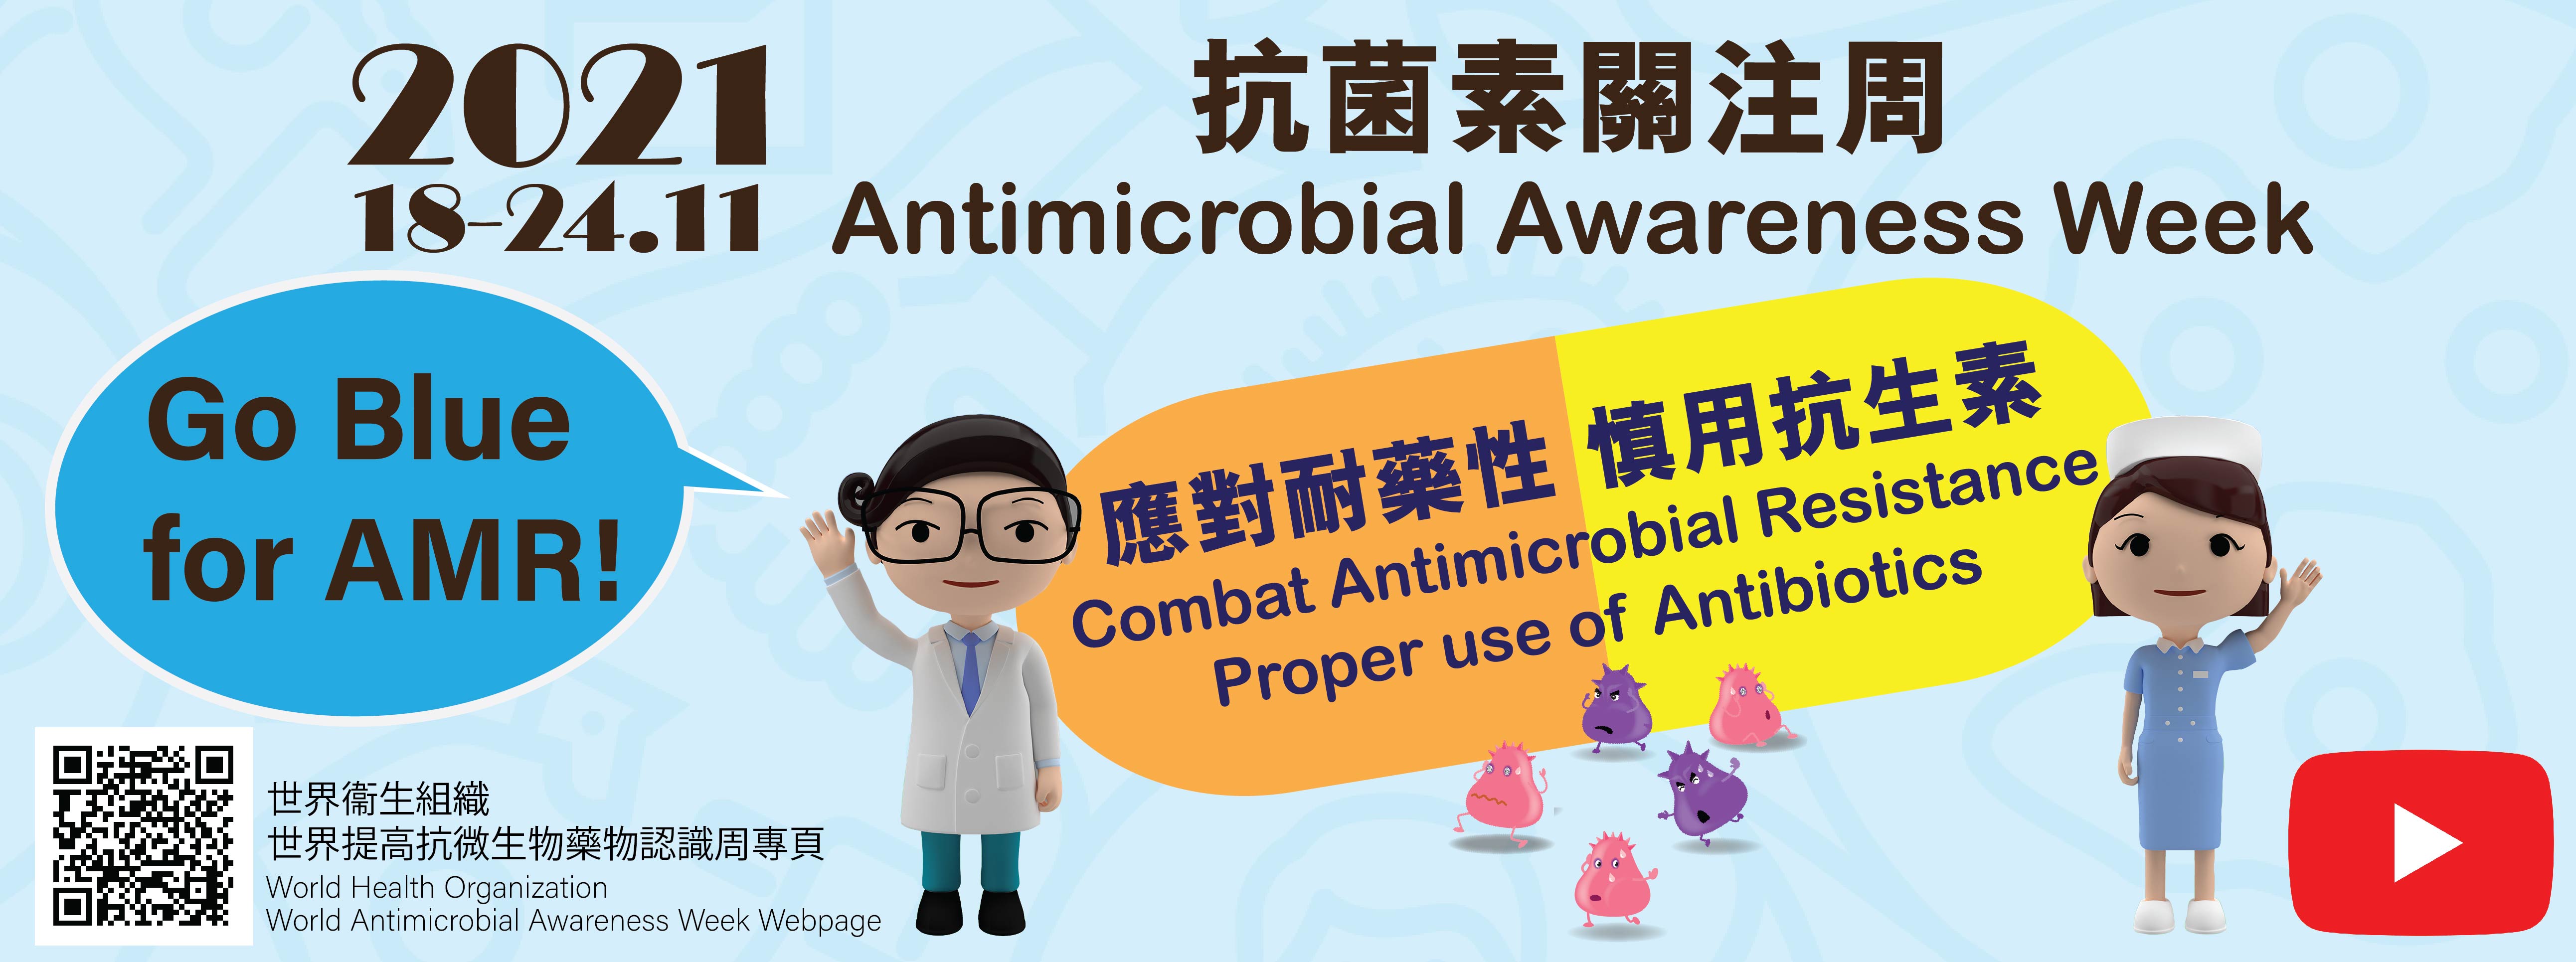 Antimicrobial Awareness Week 2021